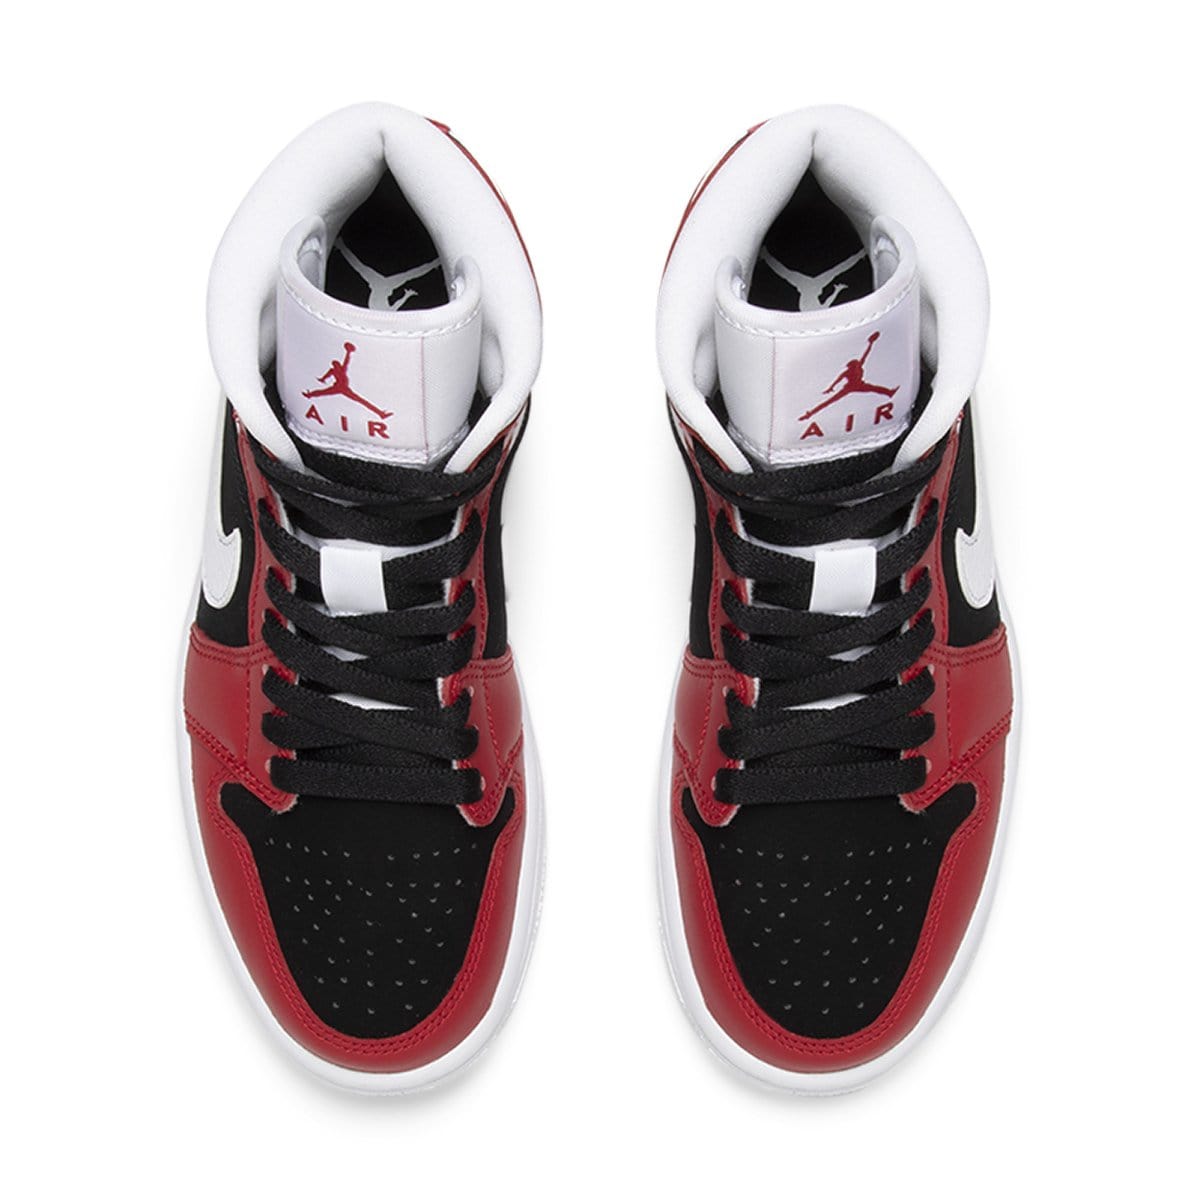 Air Jordan Shoes AIR JORDAN 1 MID